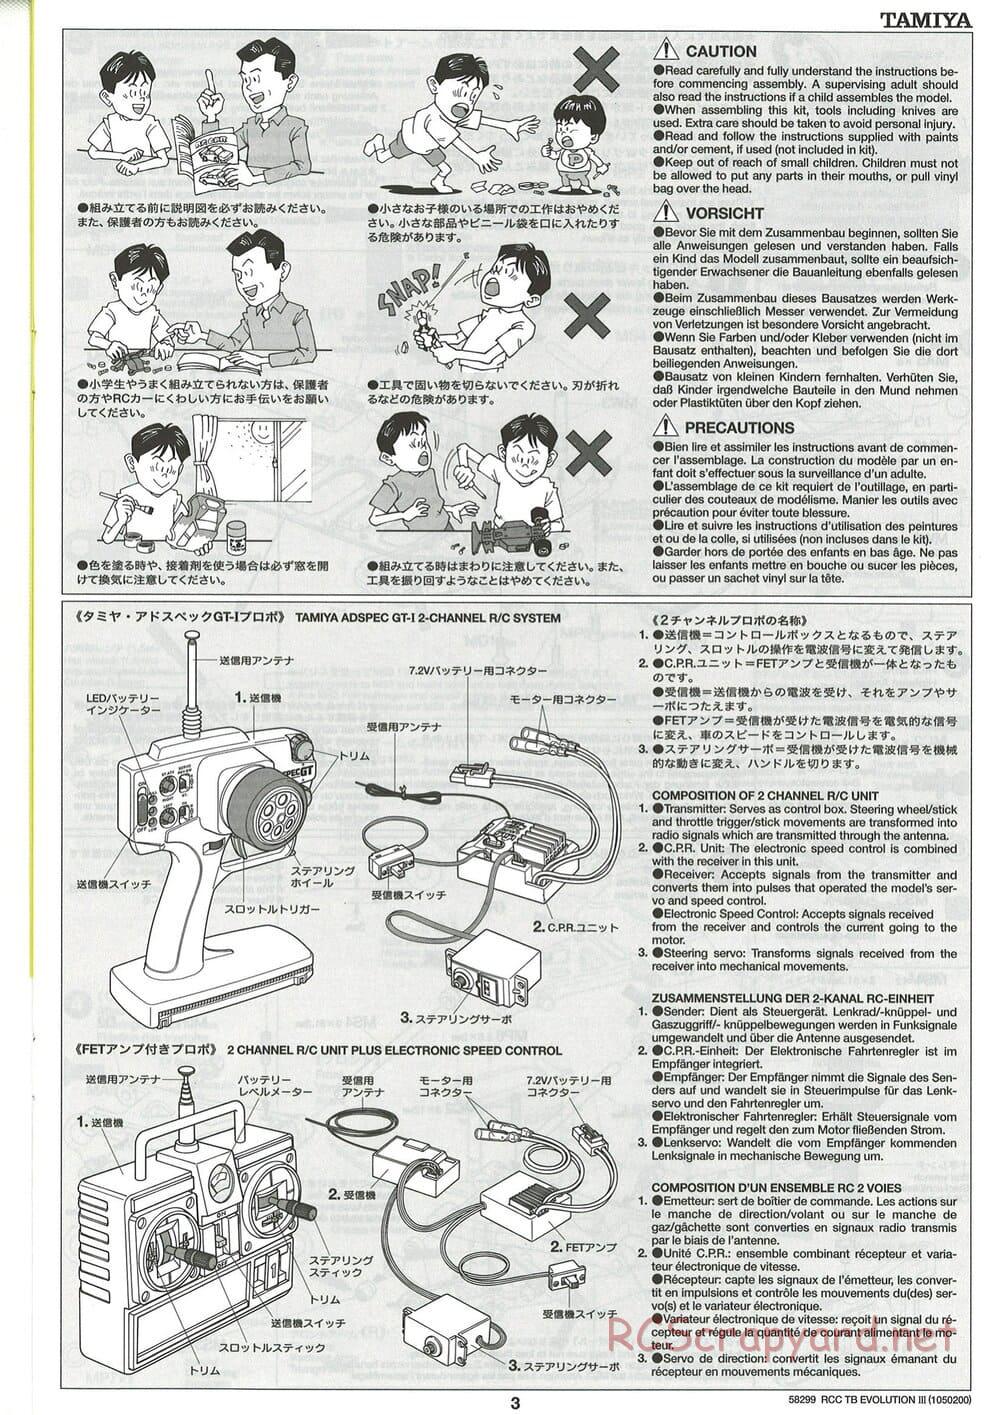 Tamiya - TB Evolution III Chassis - Manual - Page 4